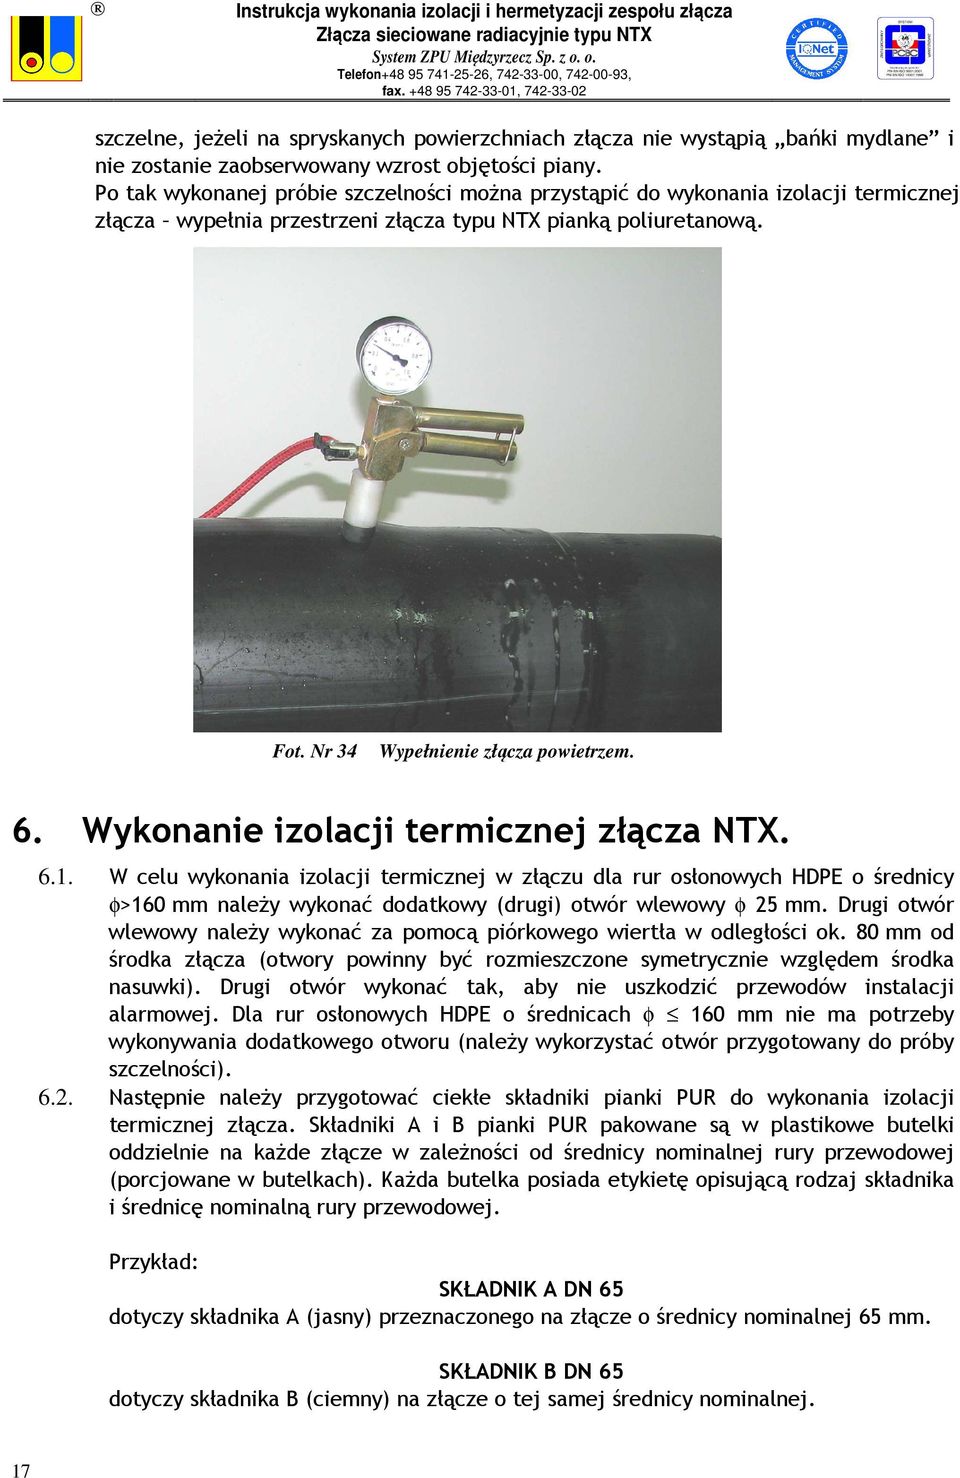 Wykonanie izolacji termicznej złącza NTX. 6.1. W celu wykonania izolacji termicznej w złączu dla rur osłonowych HDPE o średnicy φ>160 mm należy wykonać dodatkowy (drugi) otwór wlewowy φ 25 mm.